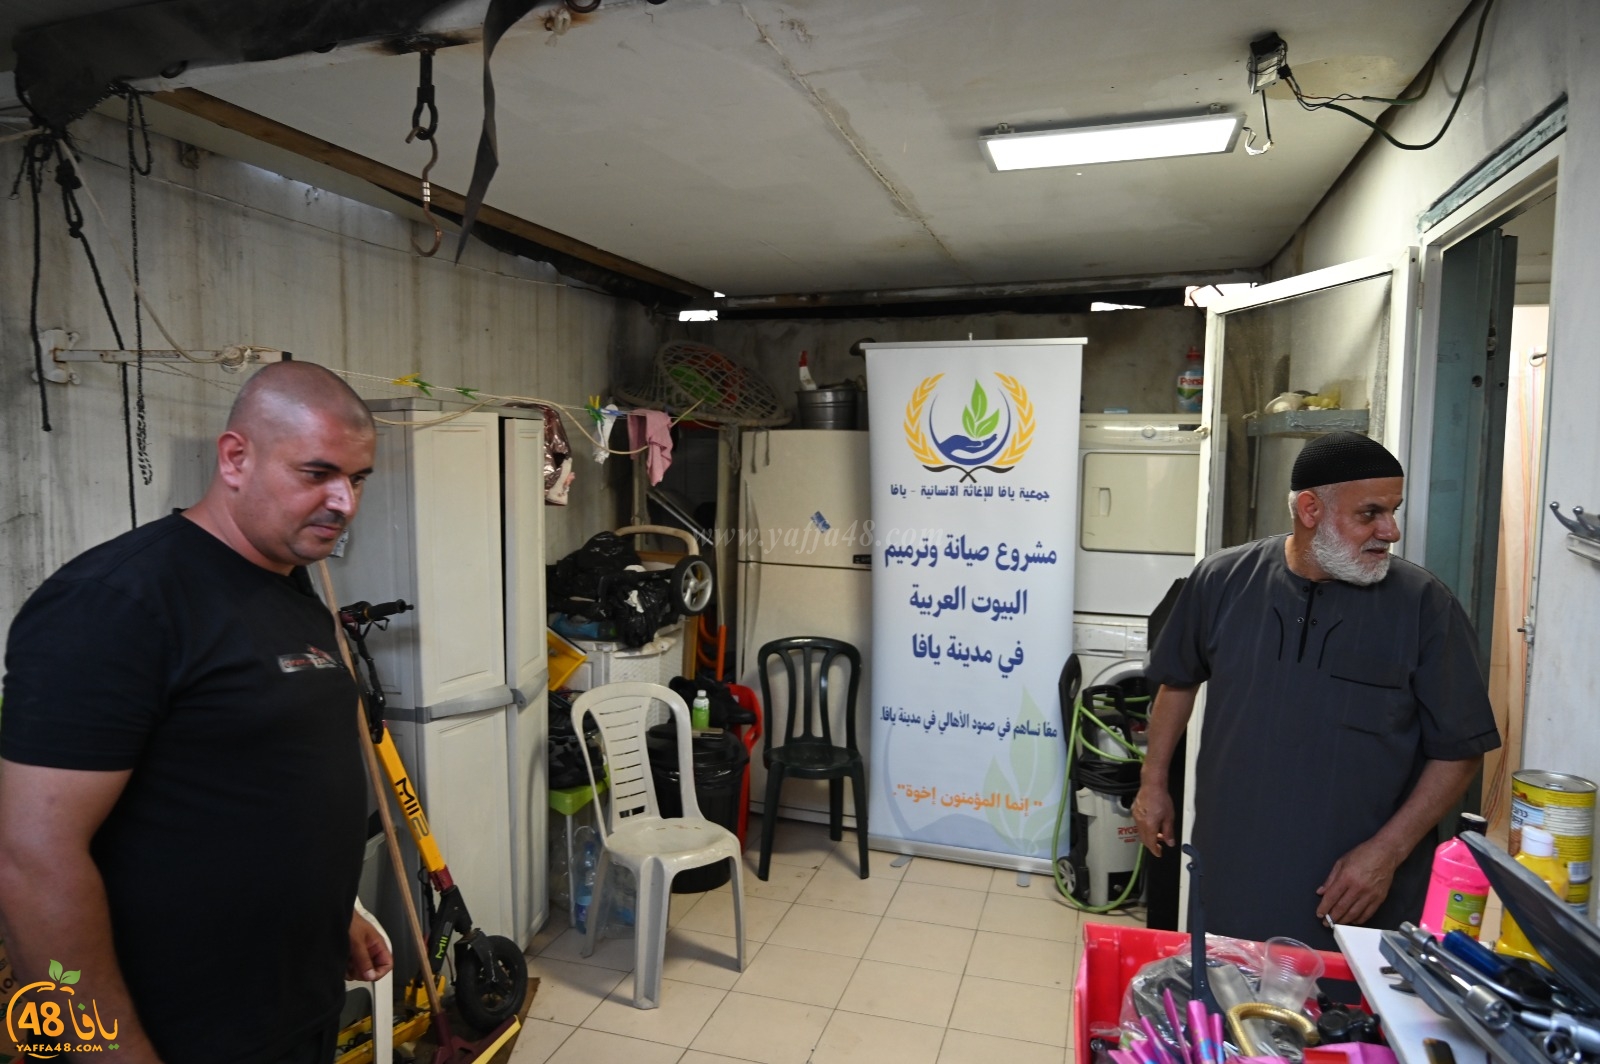  جمعية يافا تُطلق نداءً لترميم بيت عائلة مستورة بالمدينة